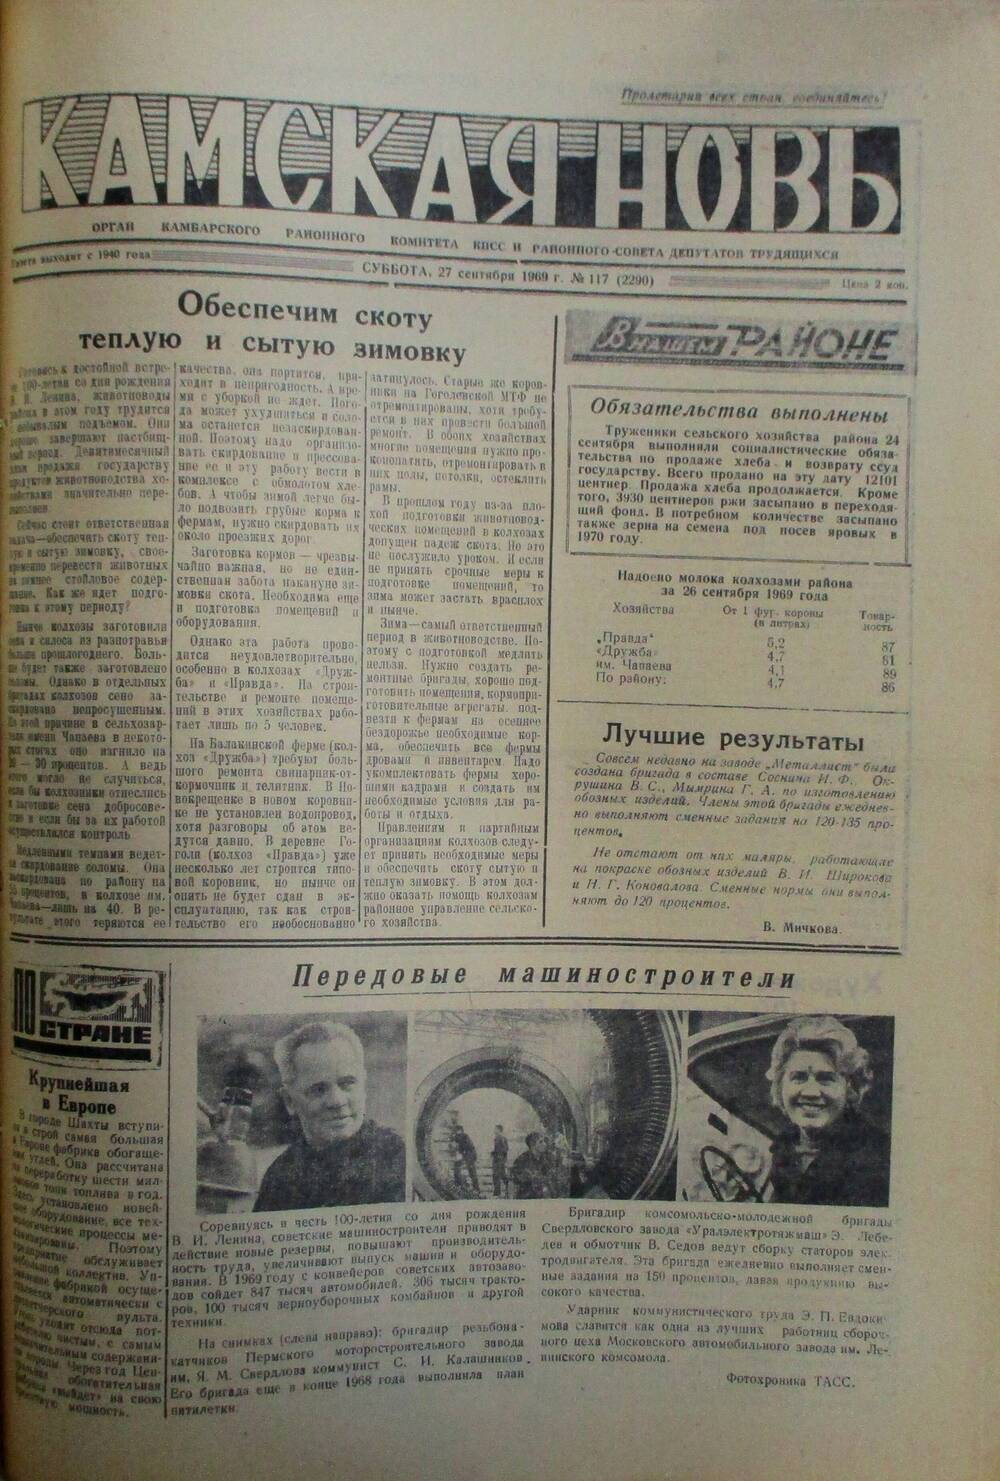 Газеты Камская новь за 1969 год, орган Камбарского райсовета и  РККПСС, с №1 по №66, с №68 по №156. №117.